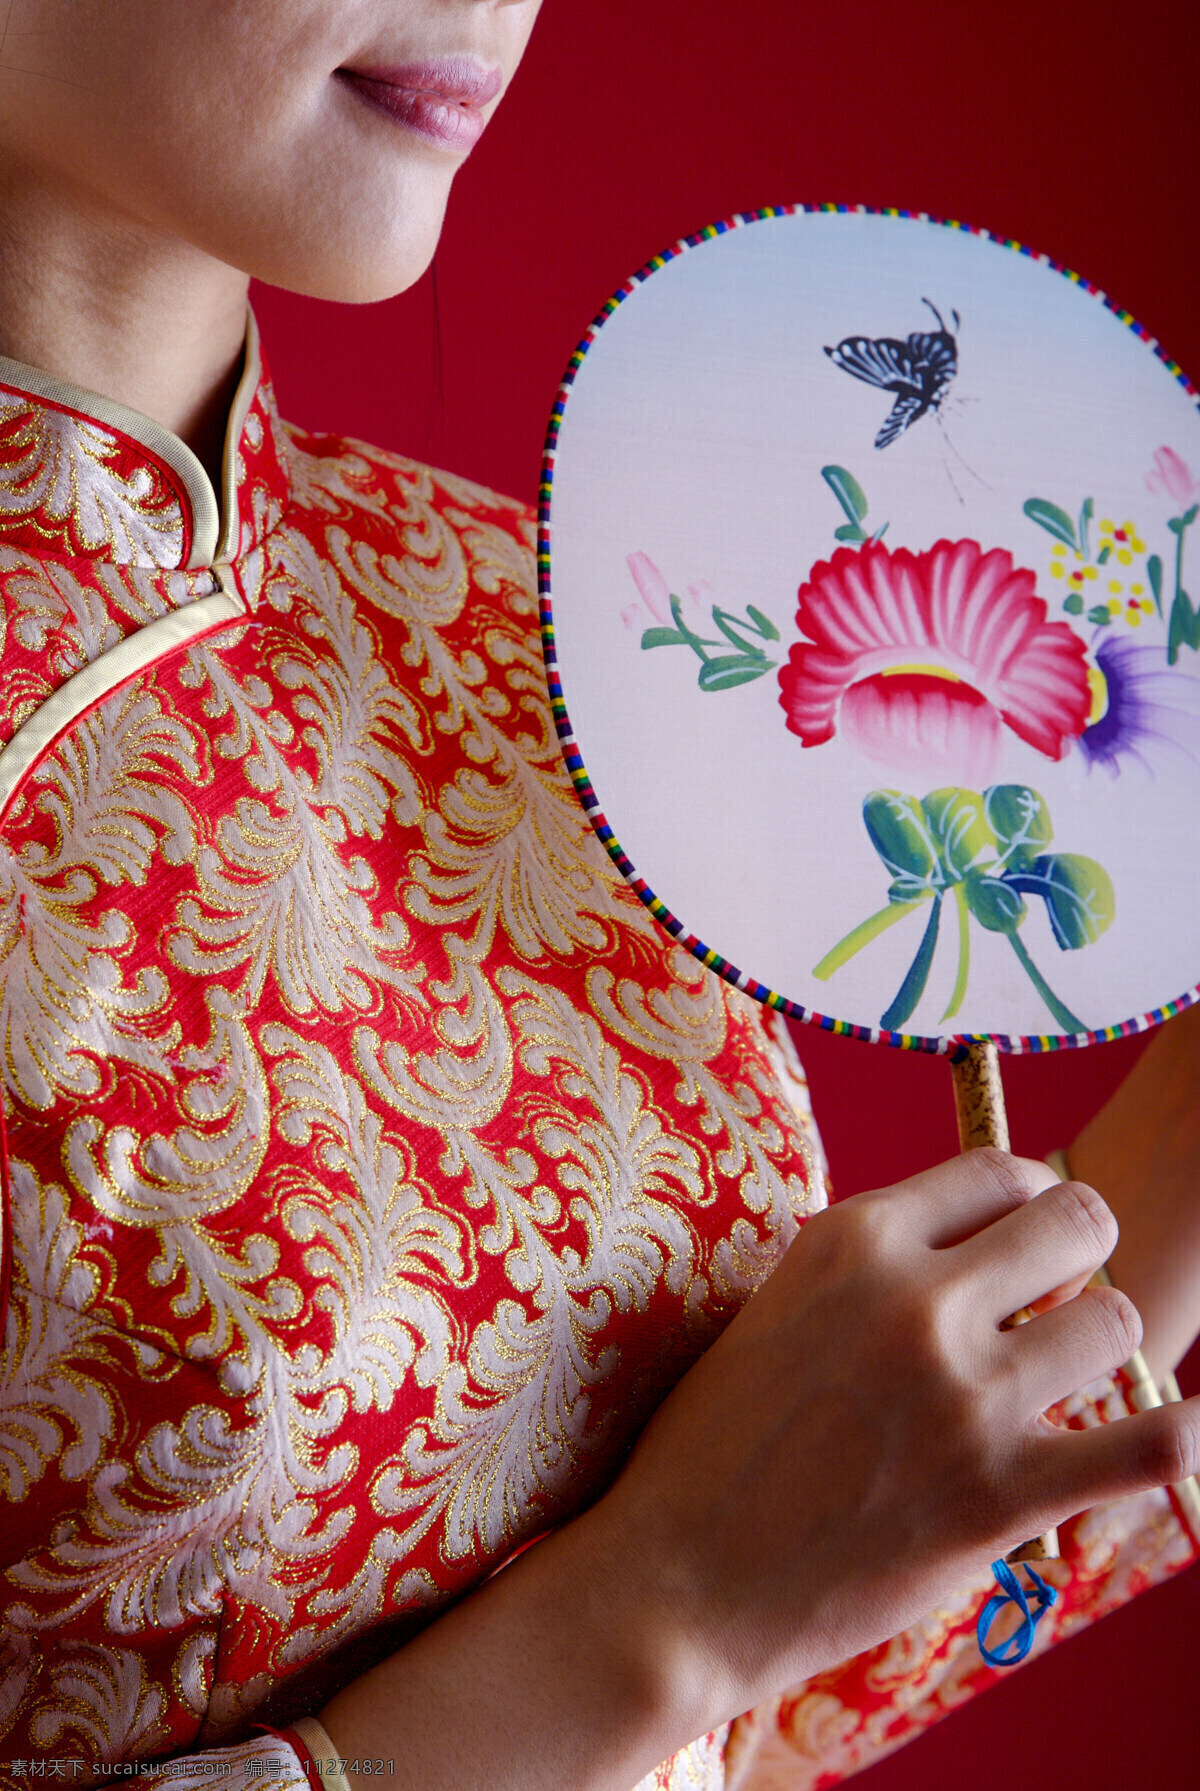 中国旗袍 中国风 中国元素 旗袍 古典 文化艺术 摄影图库